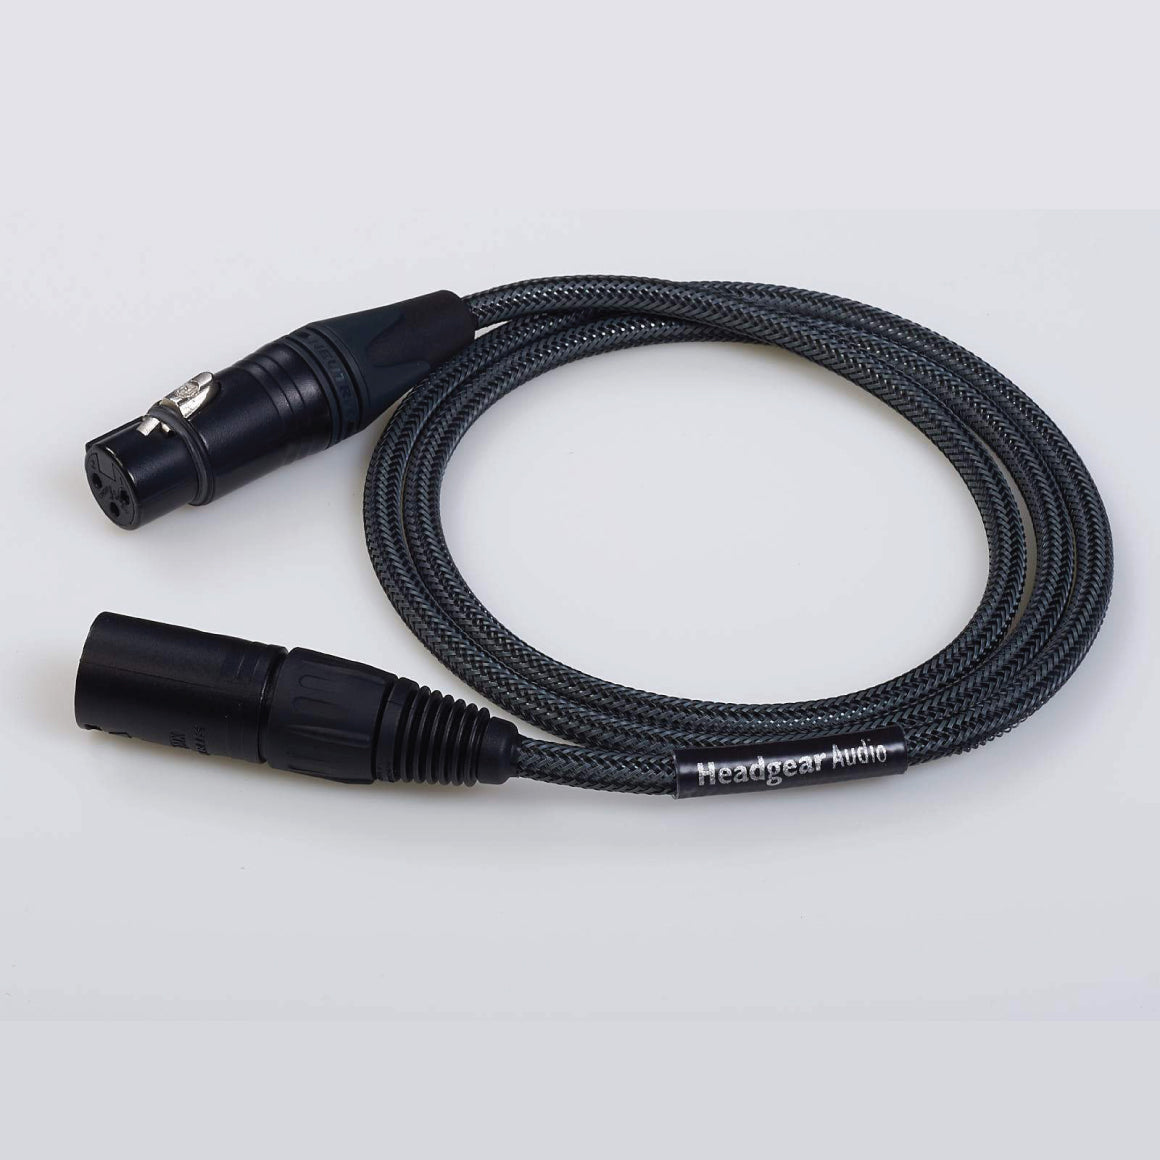 Headphone-Zone-Headgear Audio-Headgear Audio-XLR TO XLR Super-flexible Studio Speaker Cable